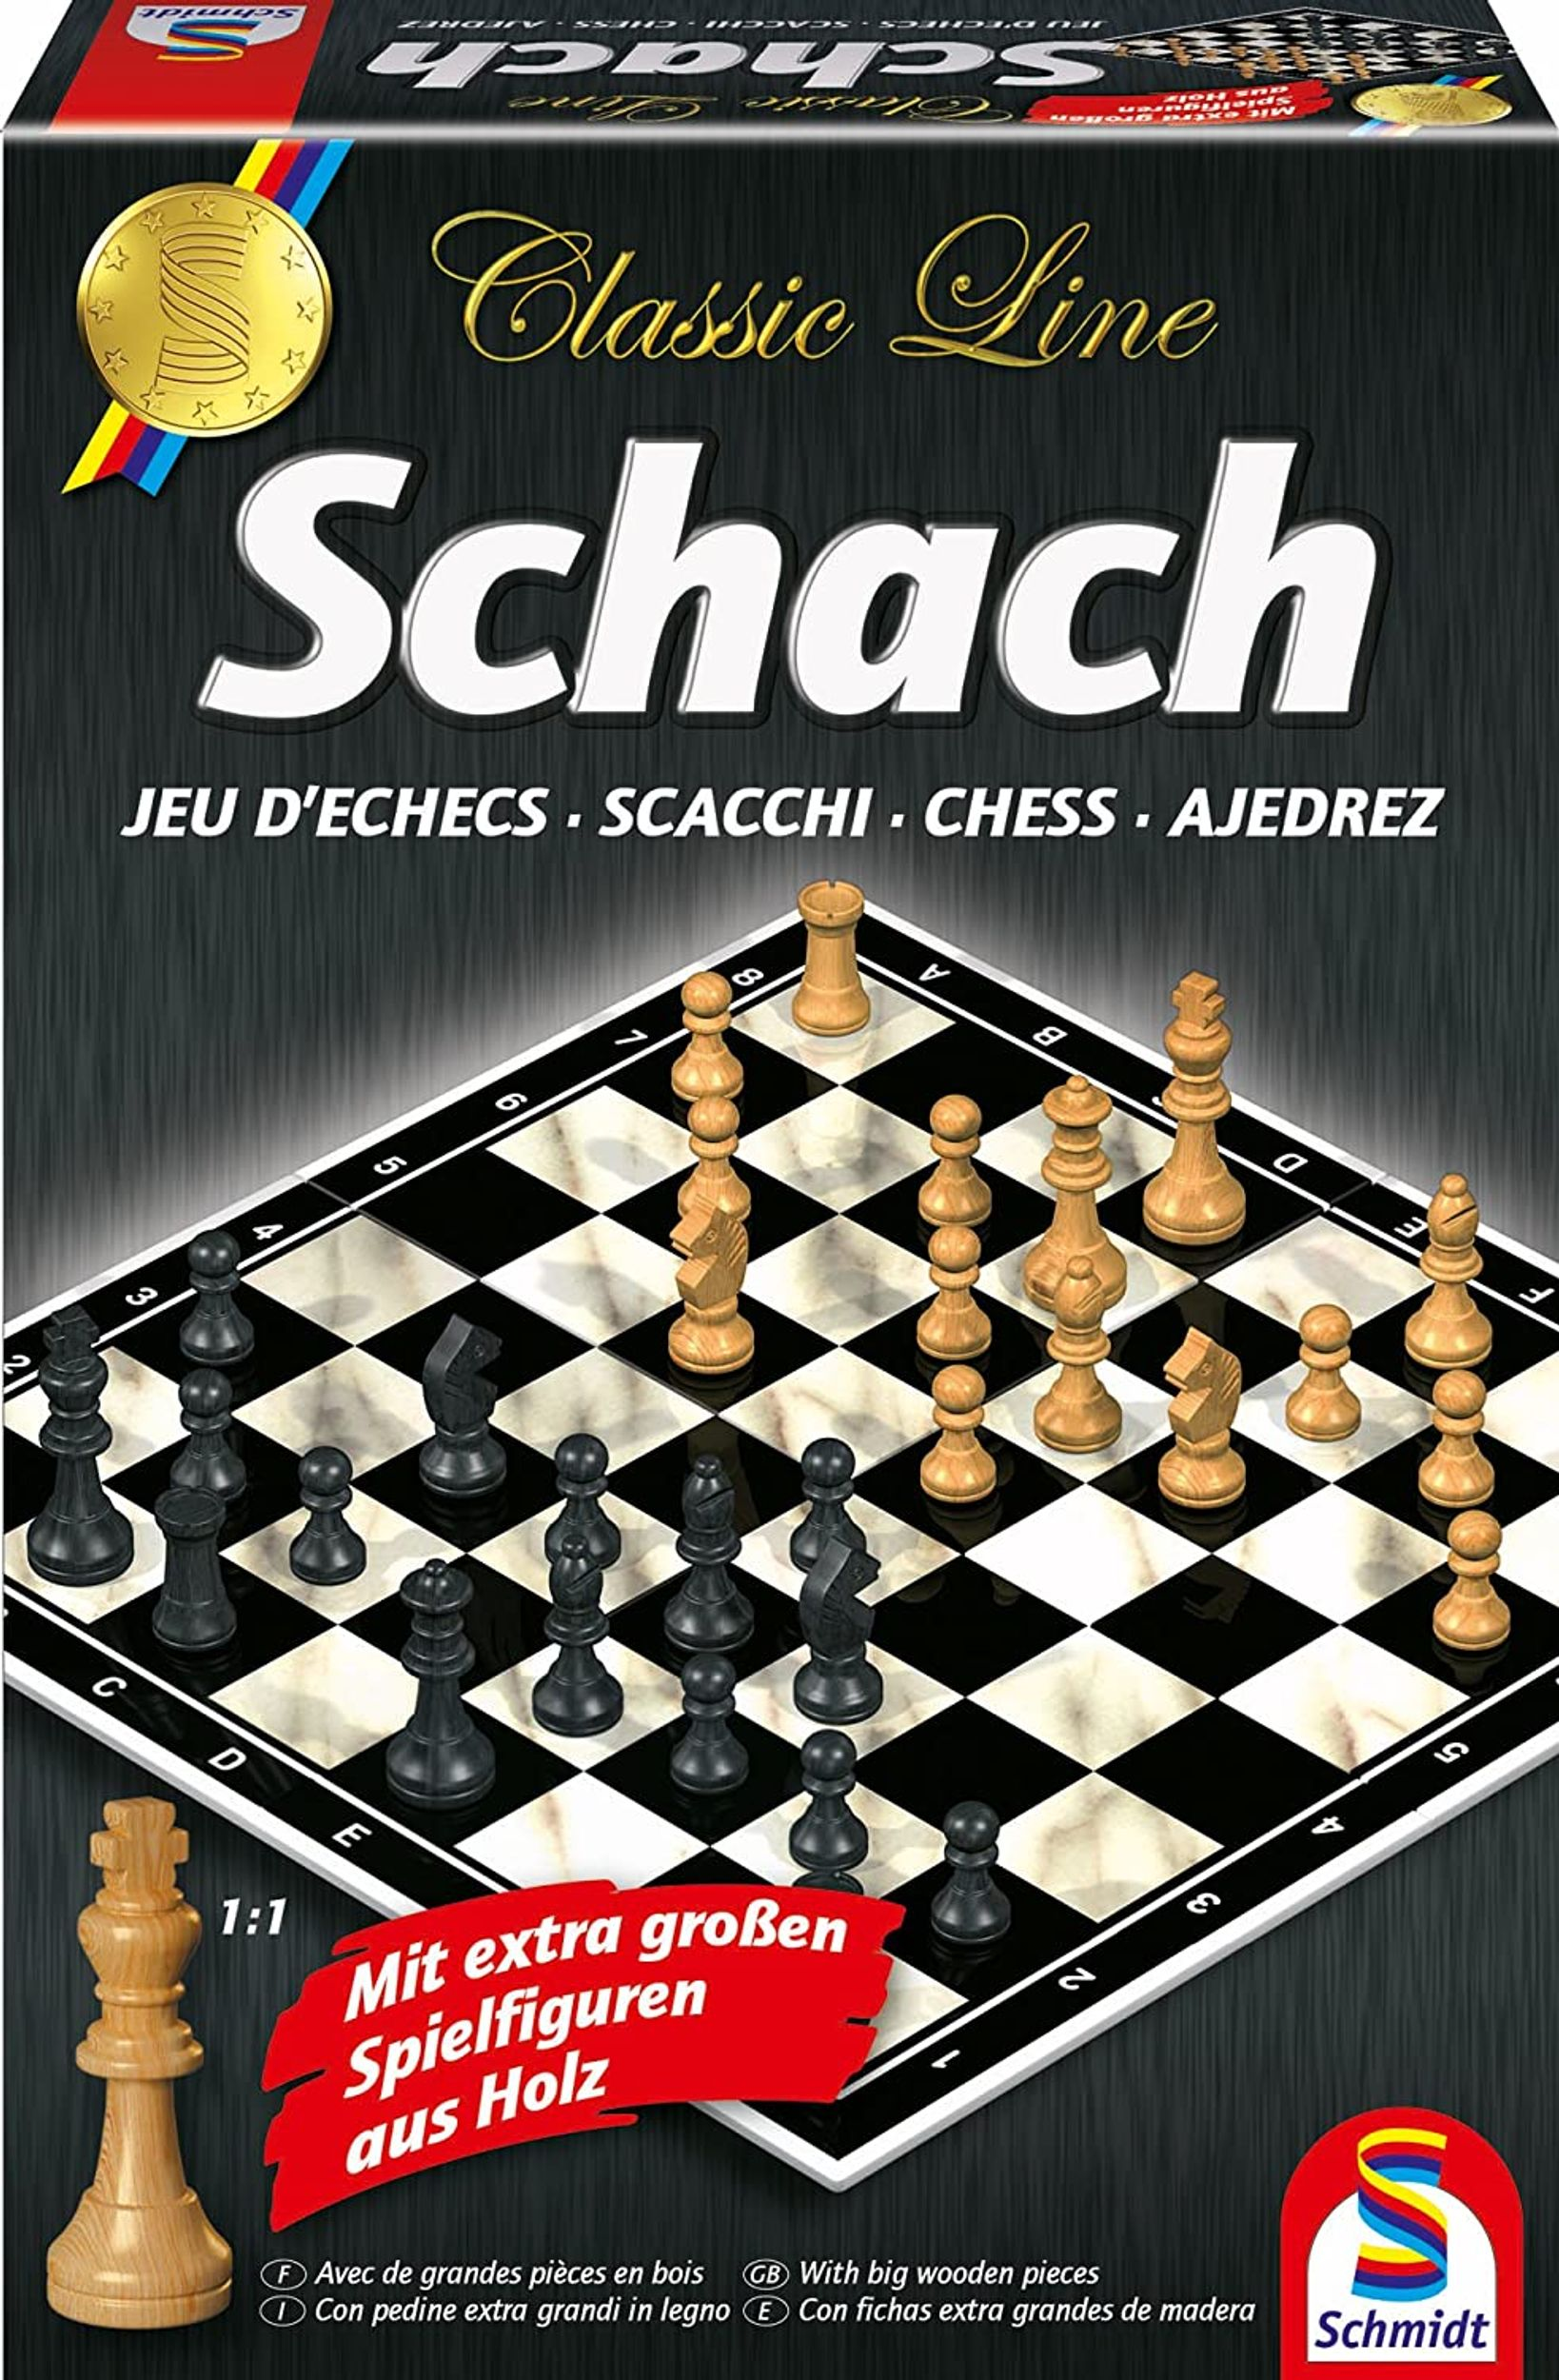 Spieler 2 Classic SPIELE Schach. Für SCHMIDT Figures: Large Line Extra Gesellschaftsspiel